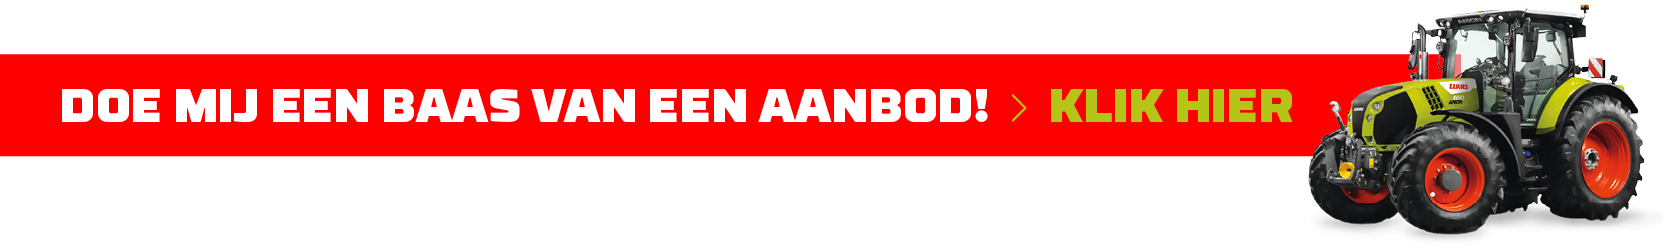 Claas-home_banner_baas_van_aanbod-ARION-660